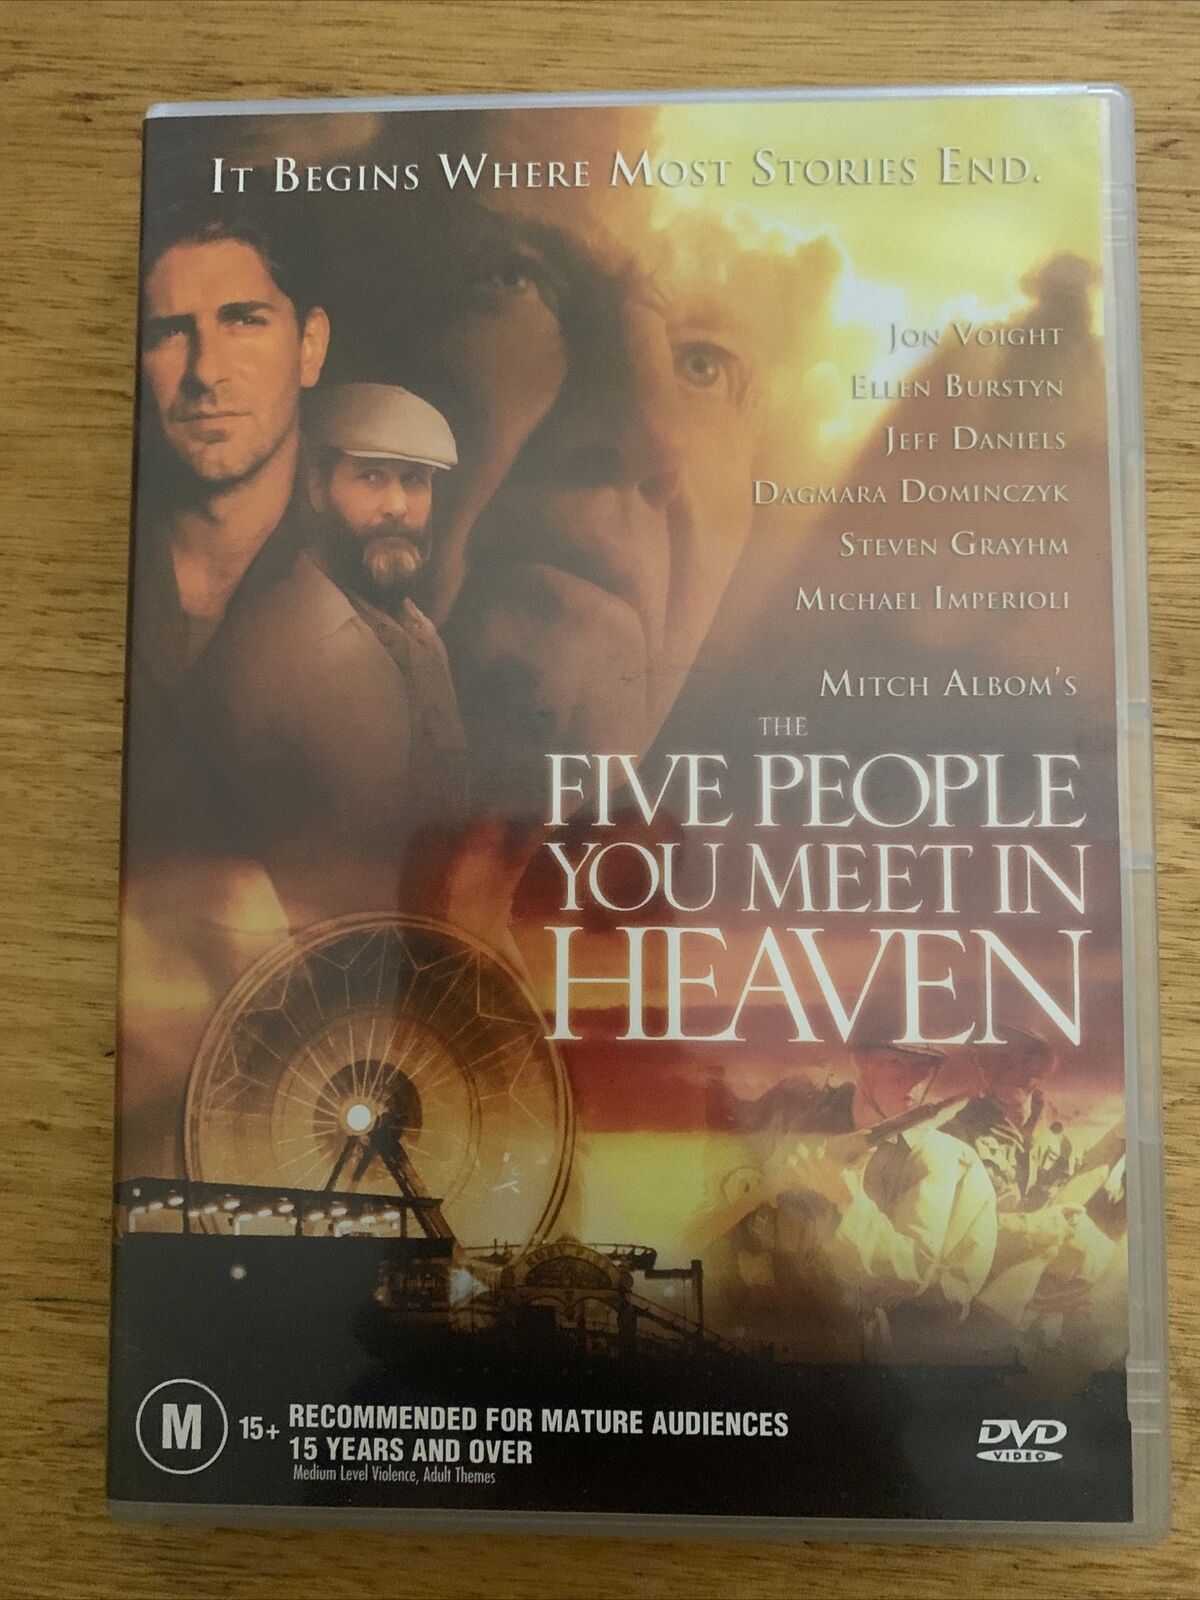 The Five People You Meet In Heaven (DVD, 2004) Jon Voight, Ellen Burstyn